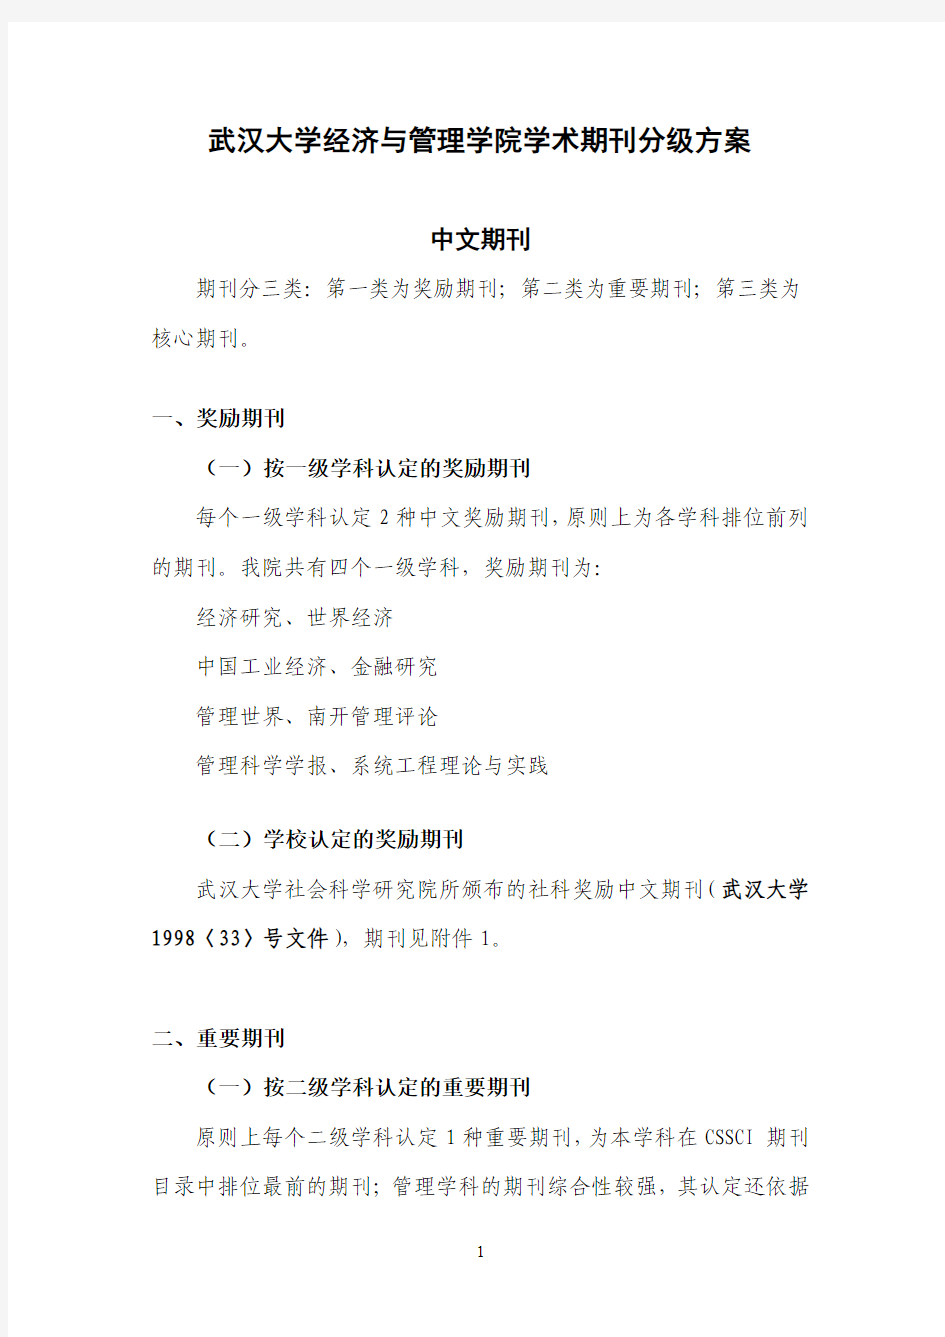 武汉大学经济与管理学院学术期刊分级方案(发布稿)